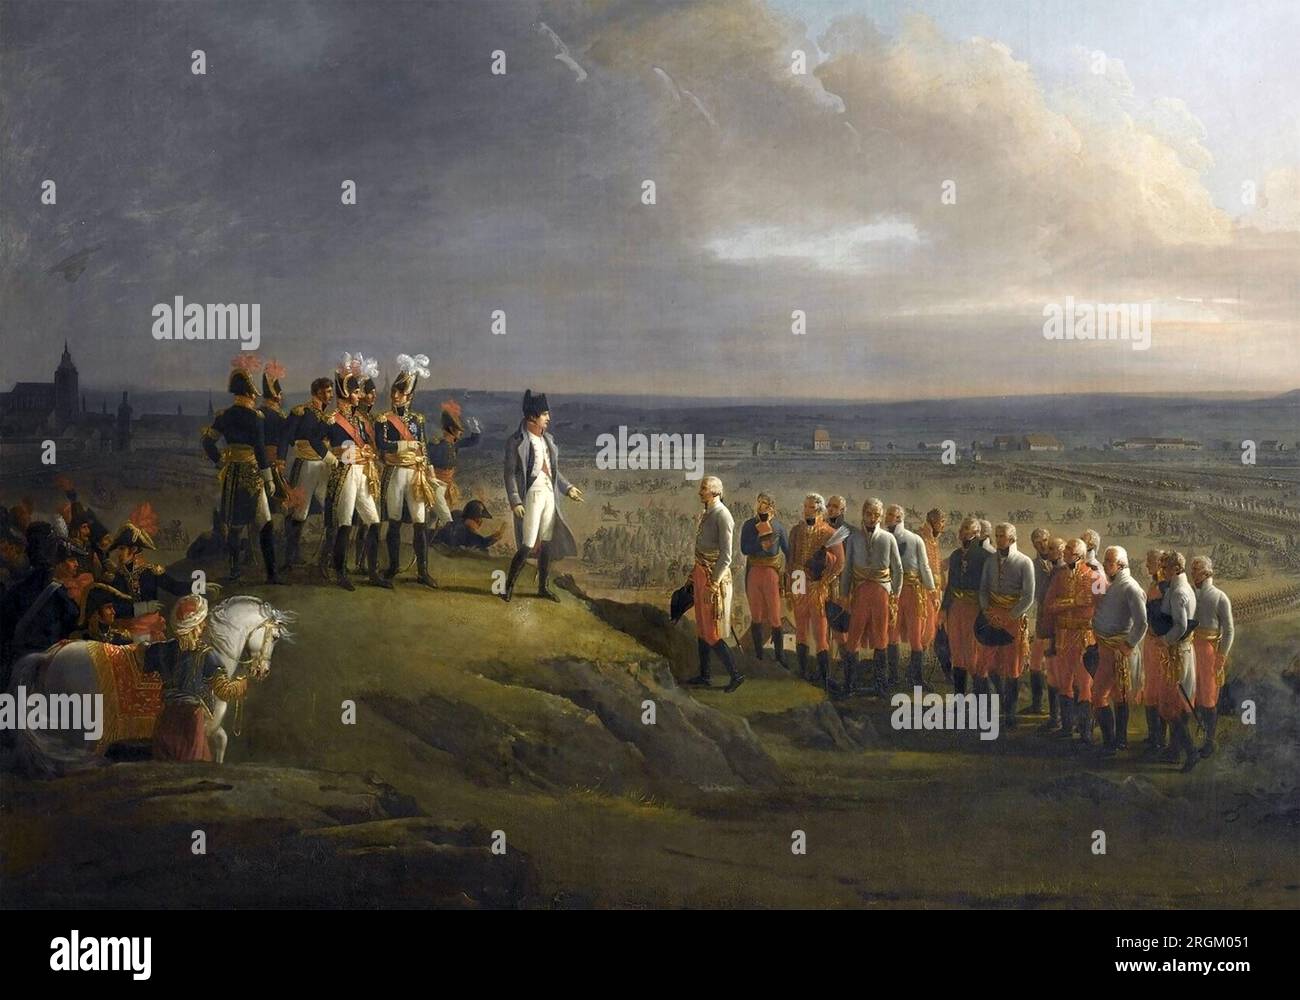 BATAILLE D'ULM LE 16-19 OCTOBRE 1805. Napoléon reçoit la reddition du général autrichien Mack. Peinture de René Berthon Banque D'Images